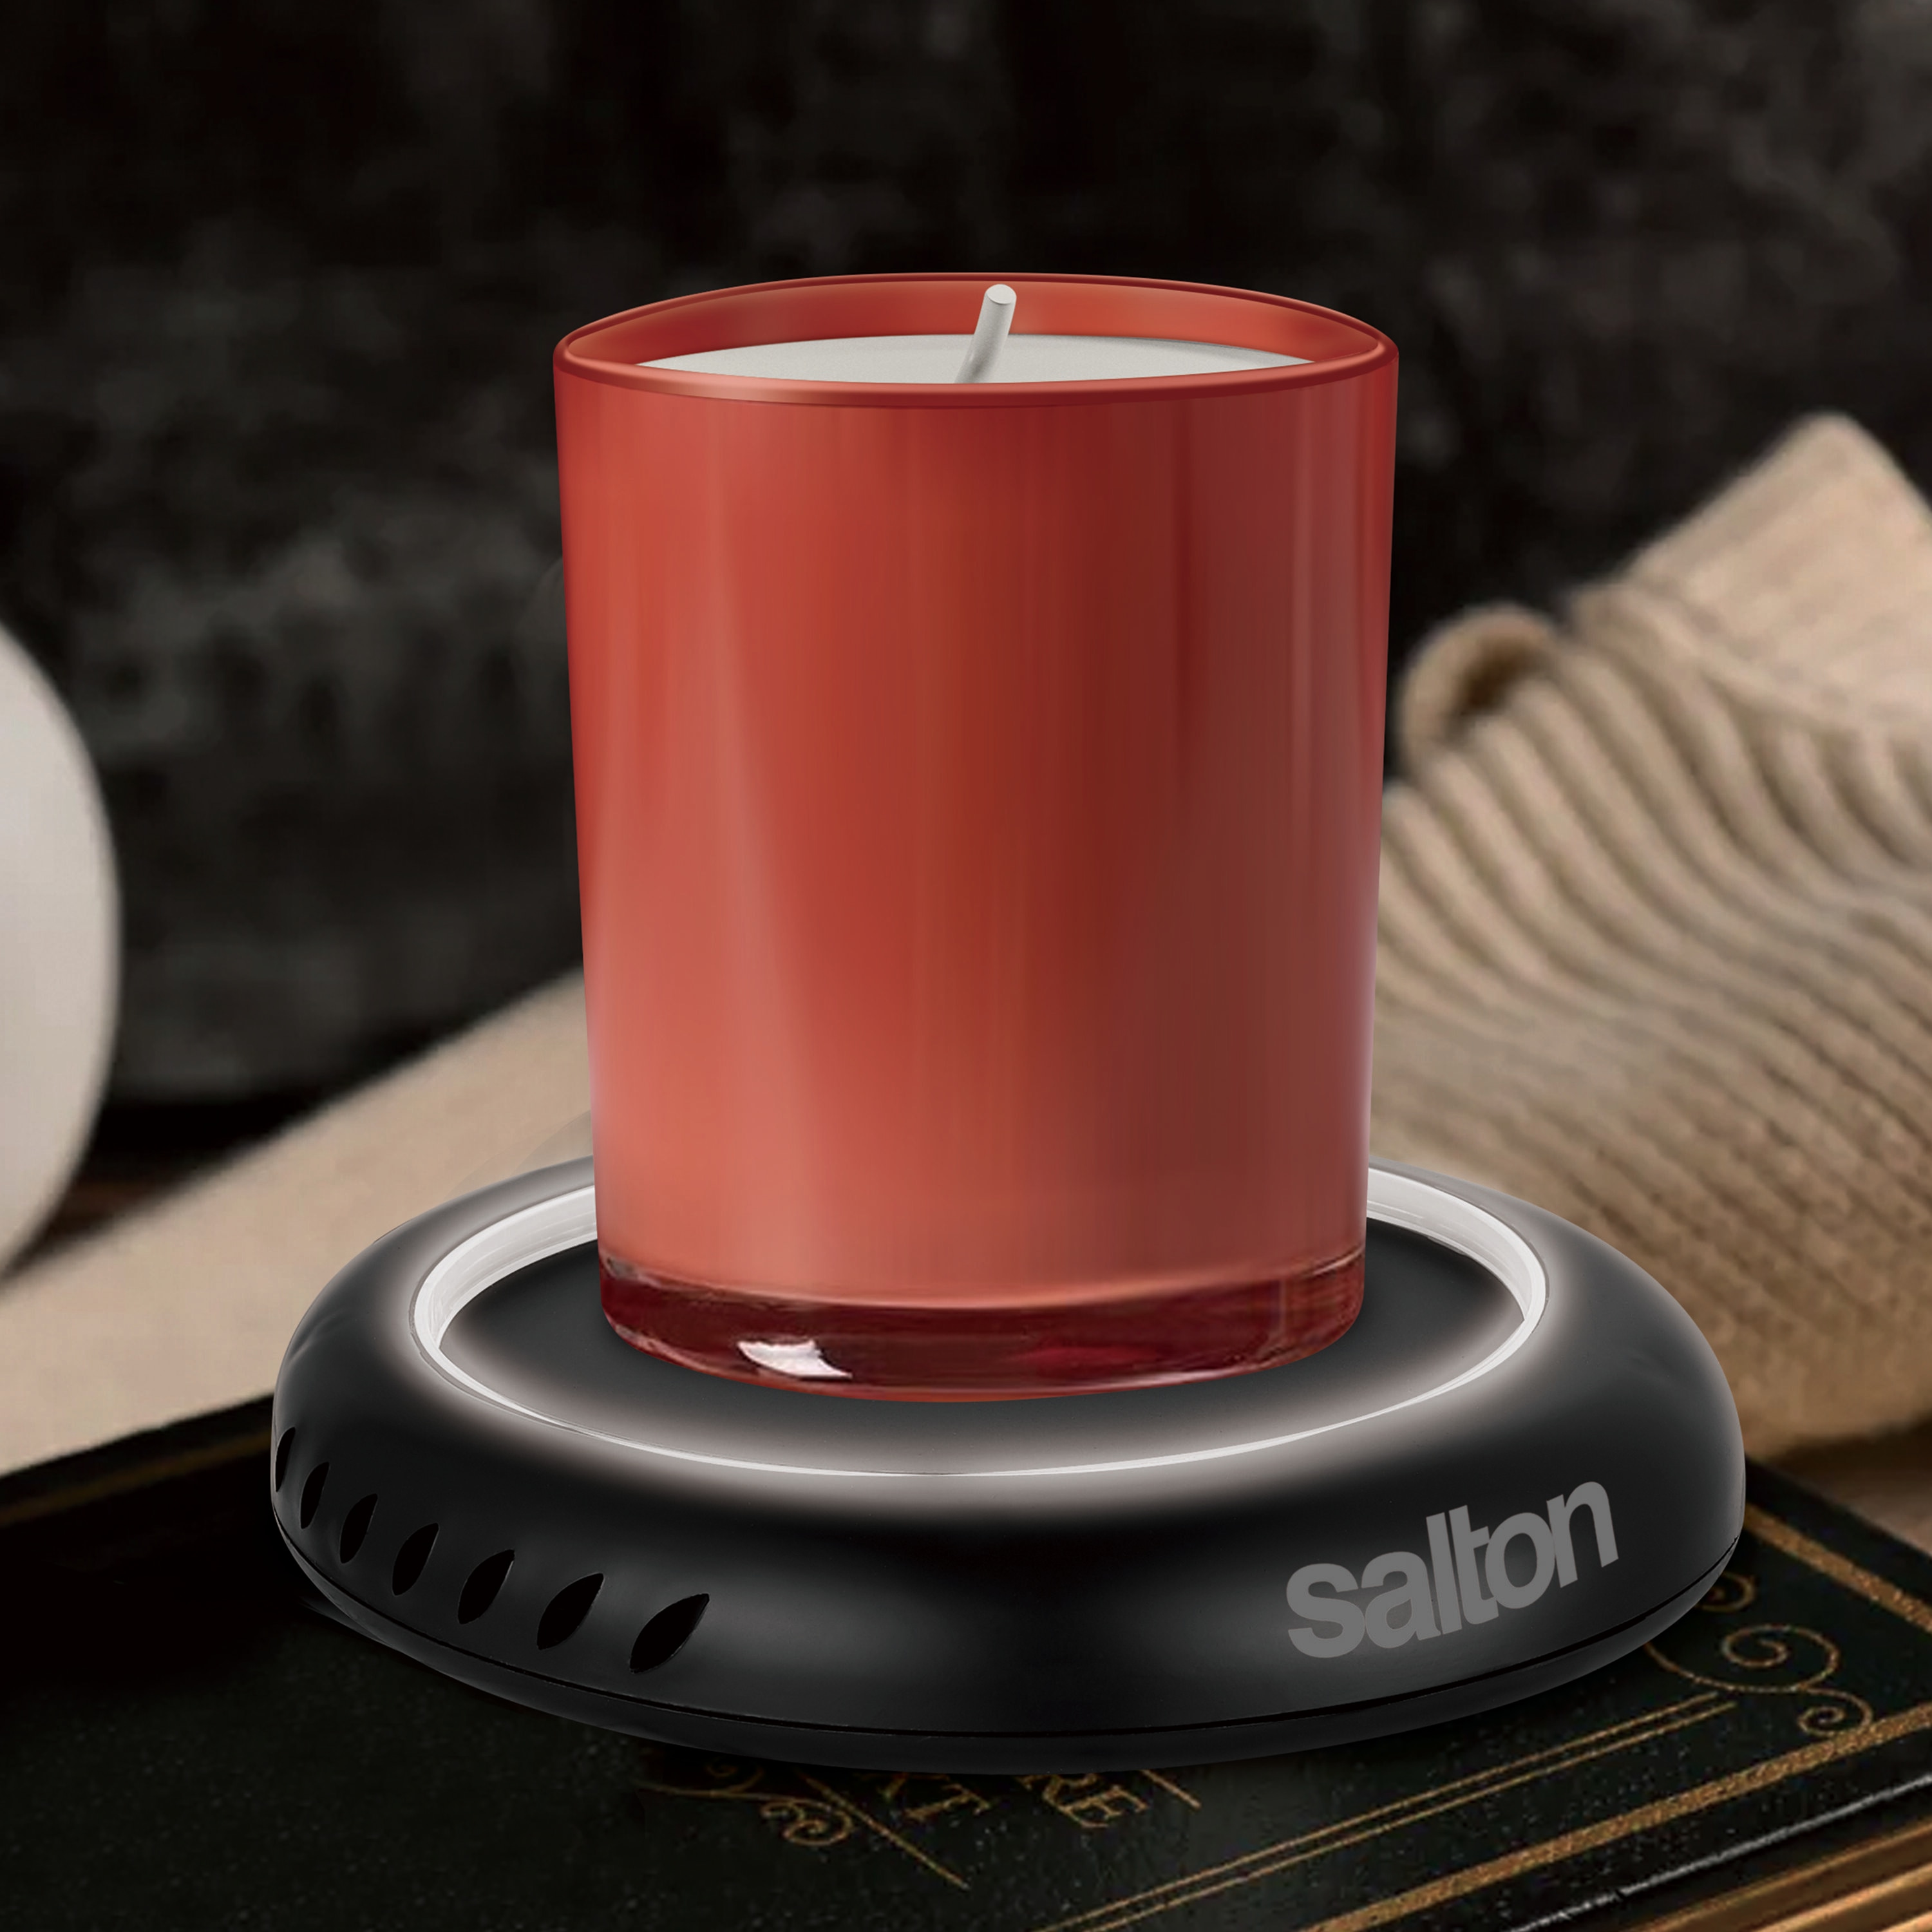 Salton Mug Warmer - Macy's